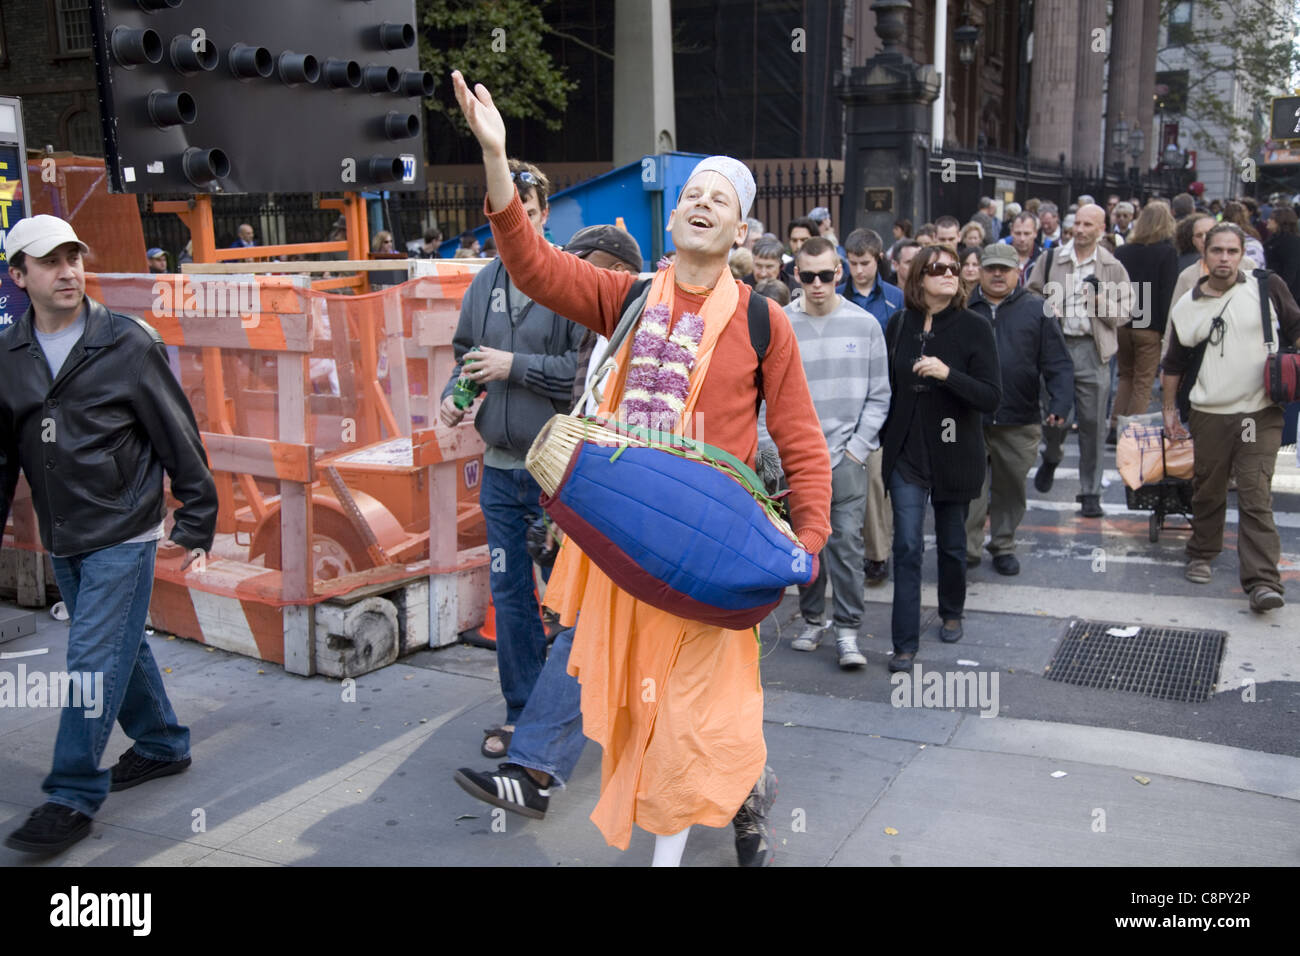 Hari Krishna joyeuses promenades dévot et joue de son tambour sur Broadway dans le quartier financier de New York Banque D'Images